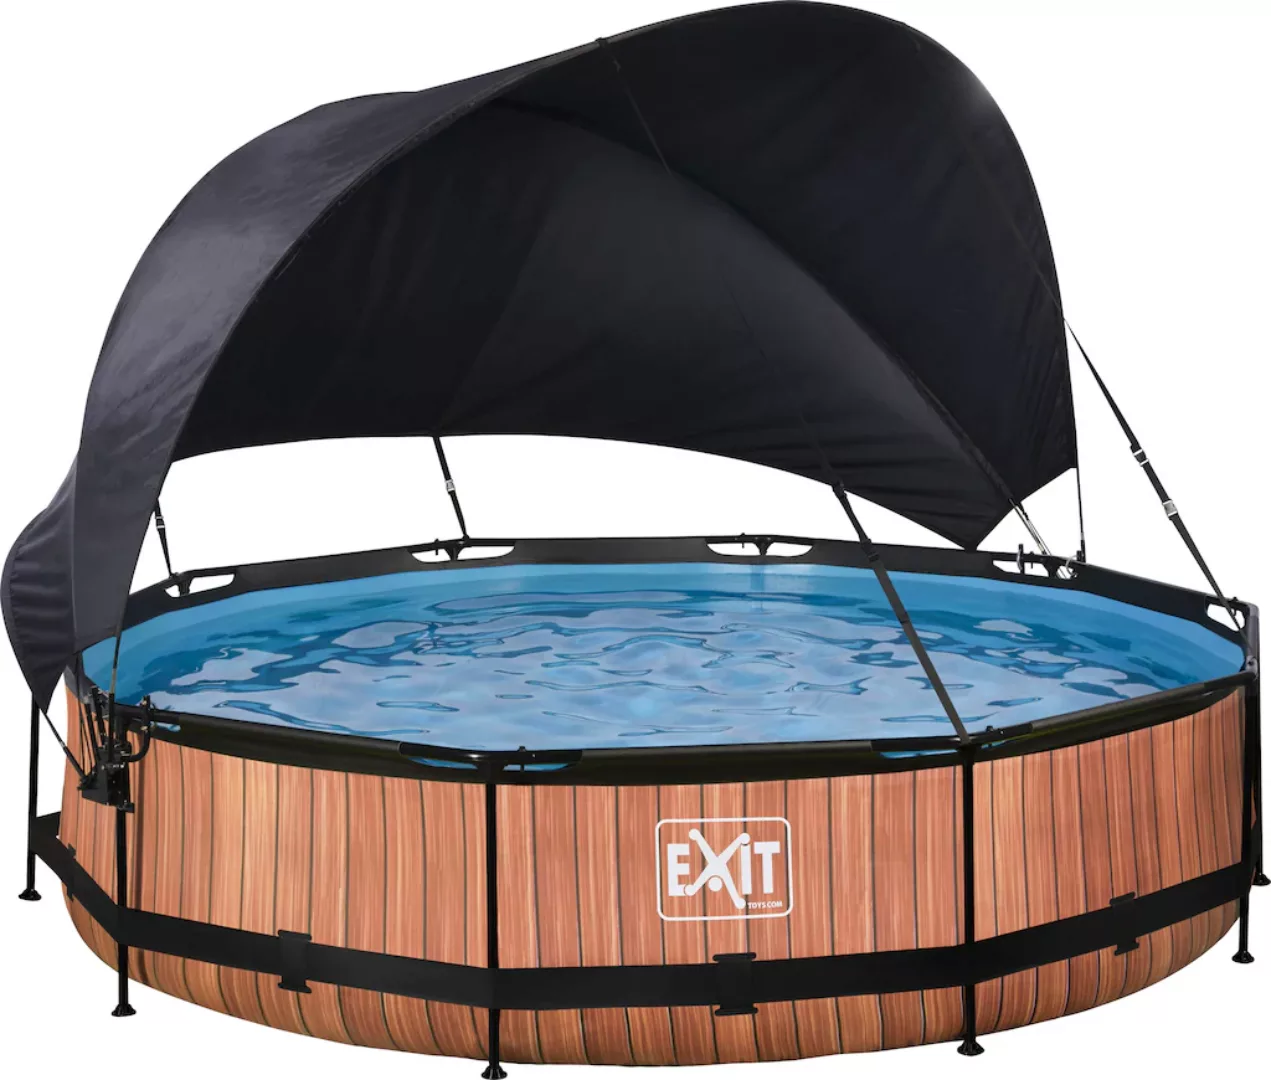 EXIT Wood Pool Braun ø 360 x 76 cm m. Filterpumpe u. Sonnensegel günstig online kaufen